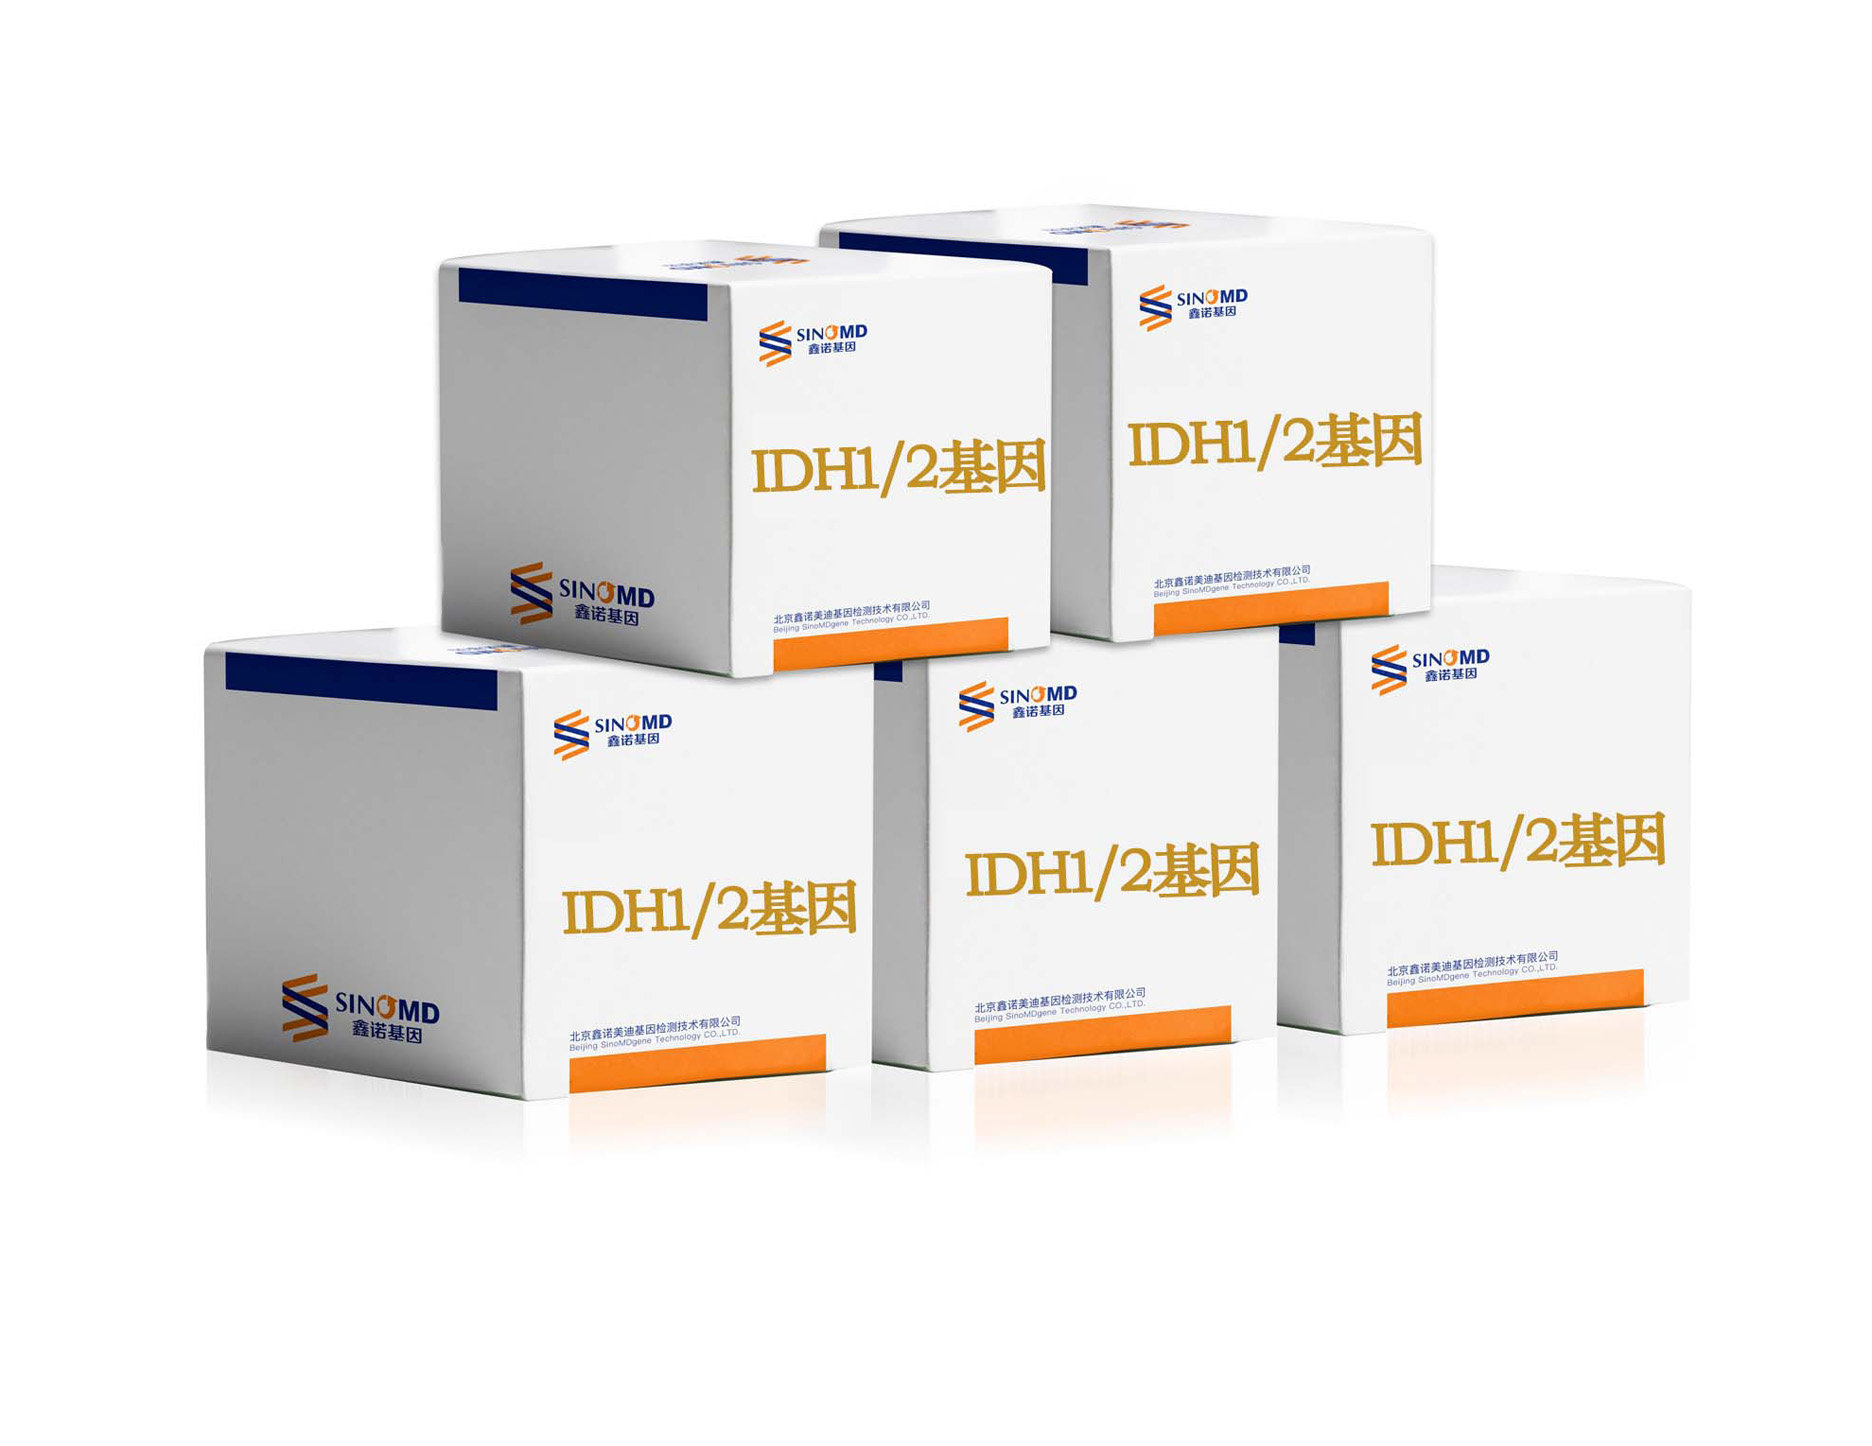 IDH1/2 基因突变检测试剂盒